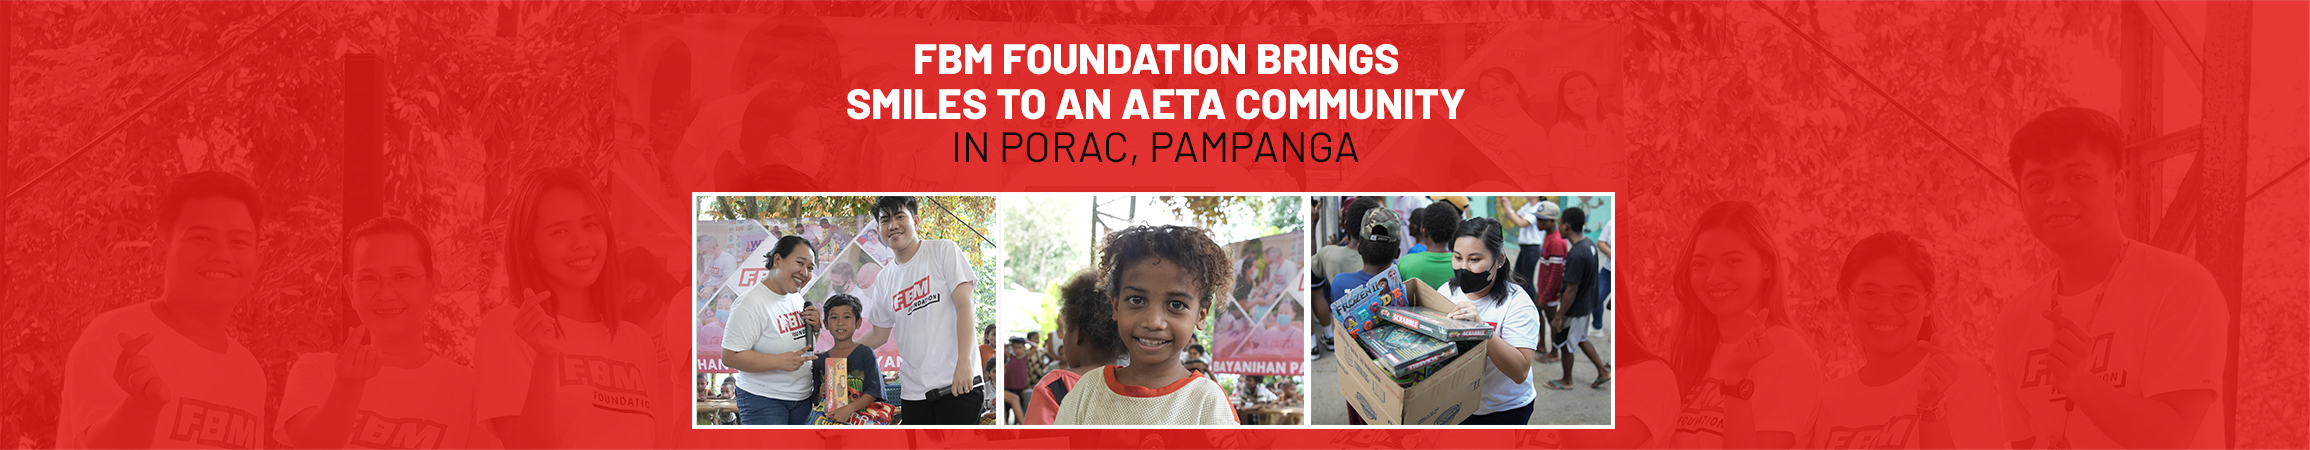 La FBM Foundation lleva esperanza y alegría a la comunidad Aeta en Porac, Pampanga